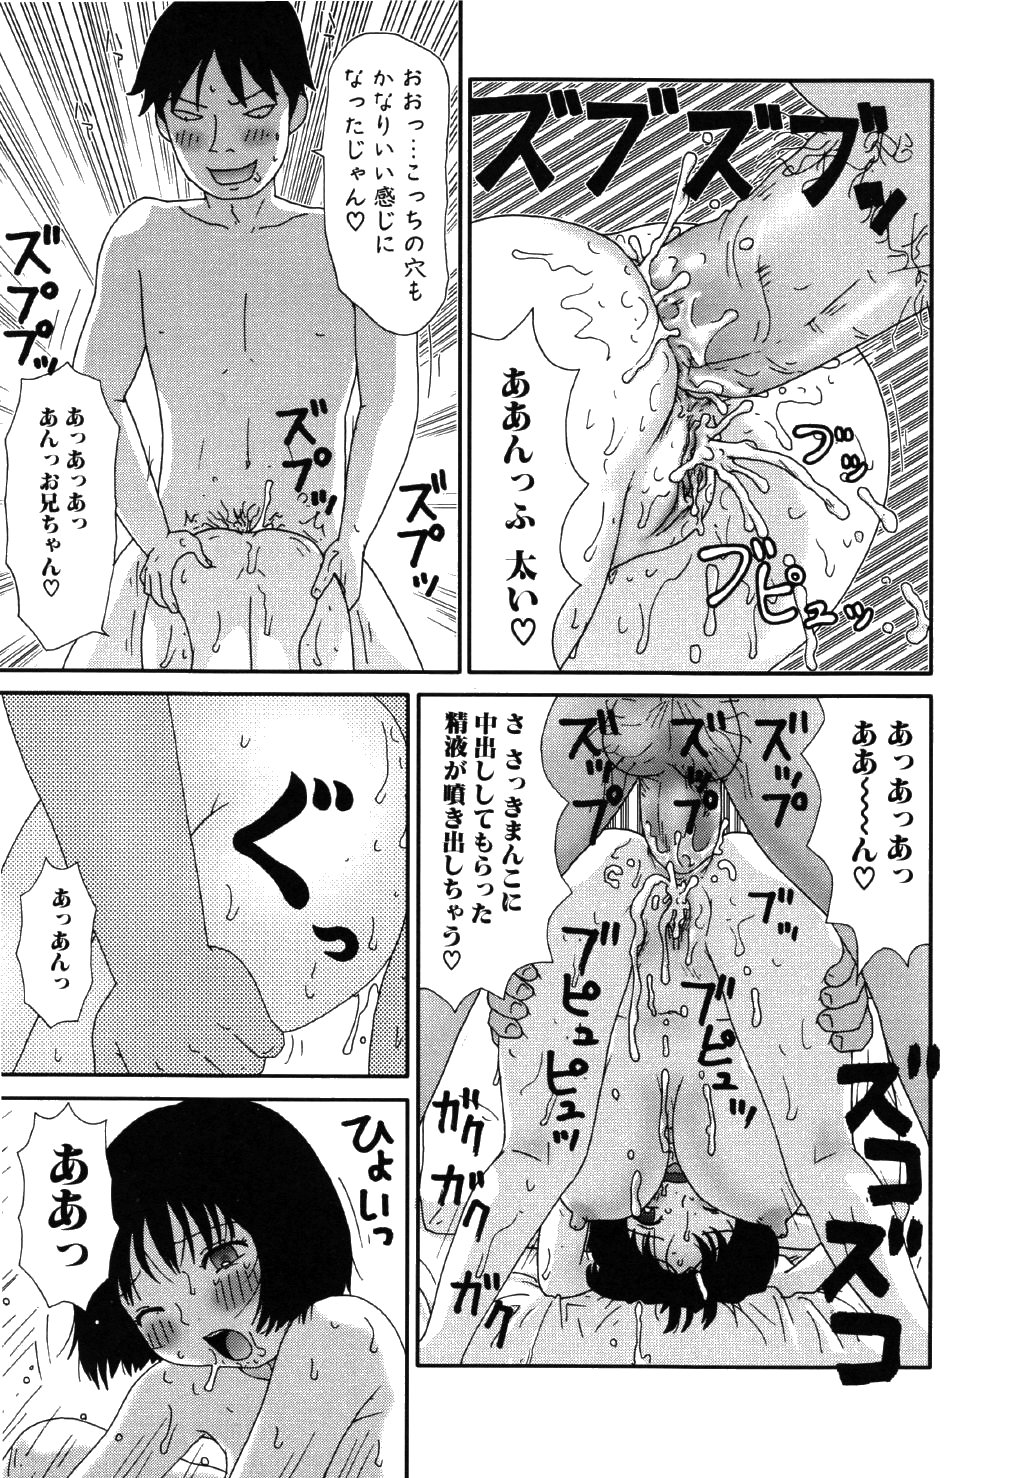 [Machino Henmaru] little yumiko chan page 9 full